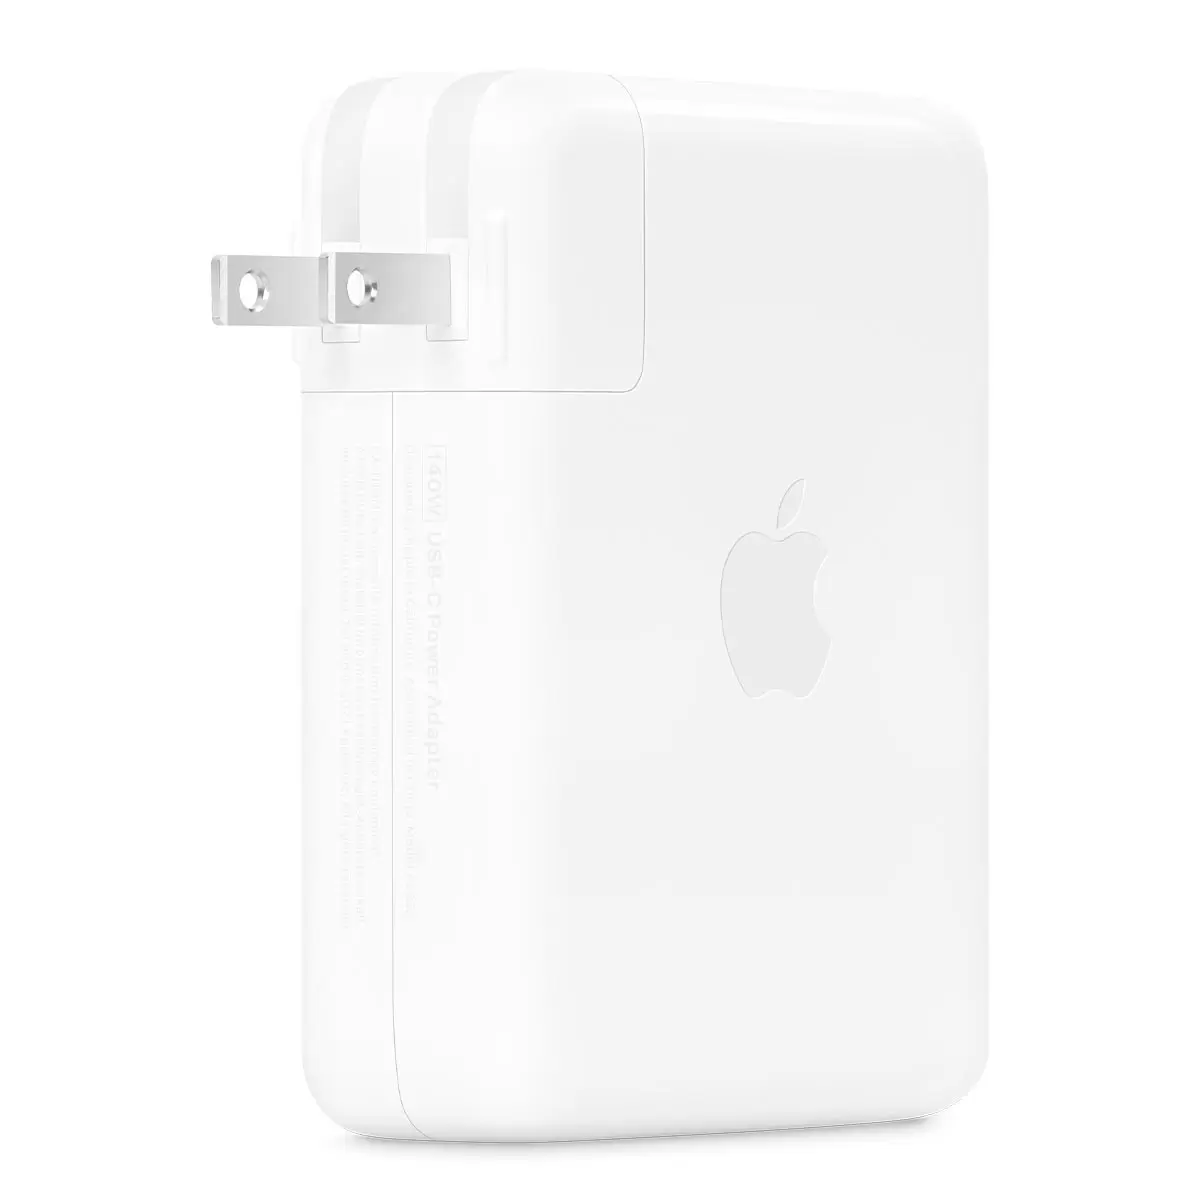 Apple 140W USB-C 電源轉接器